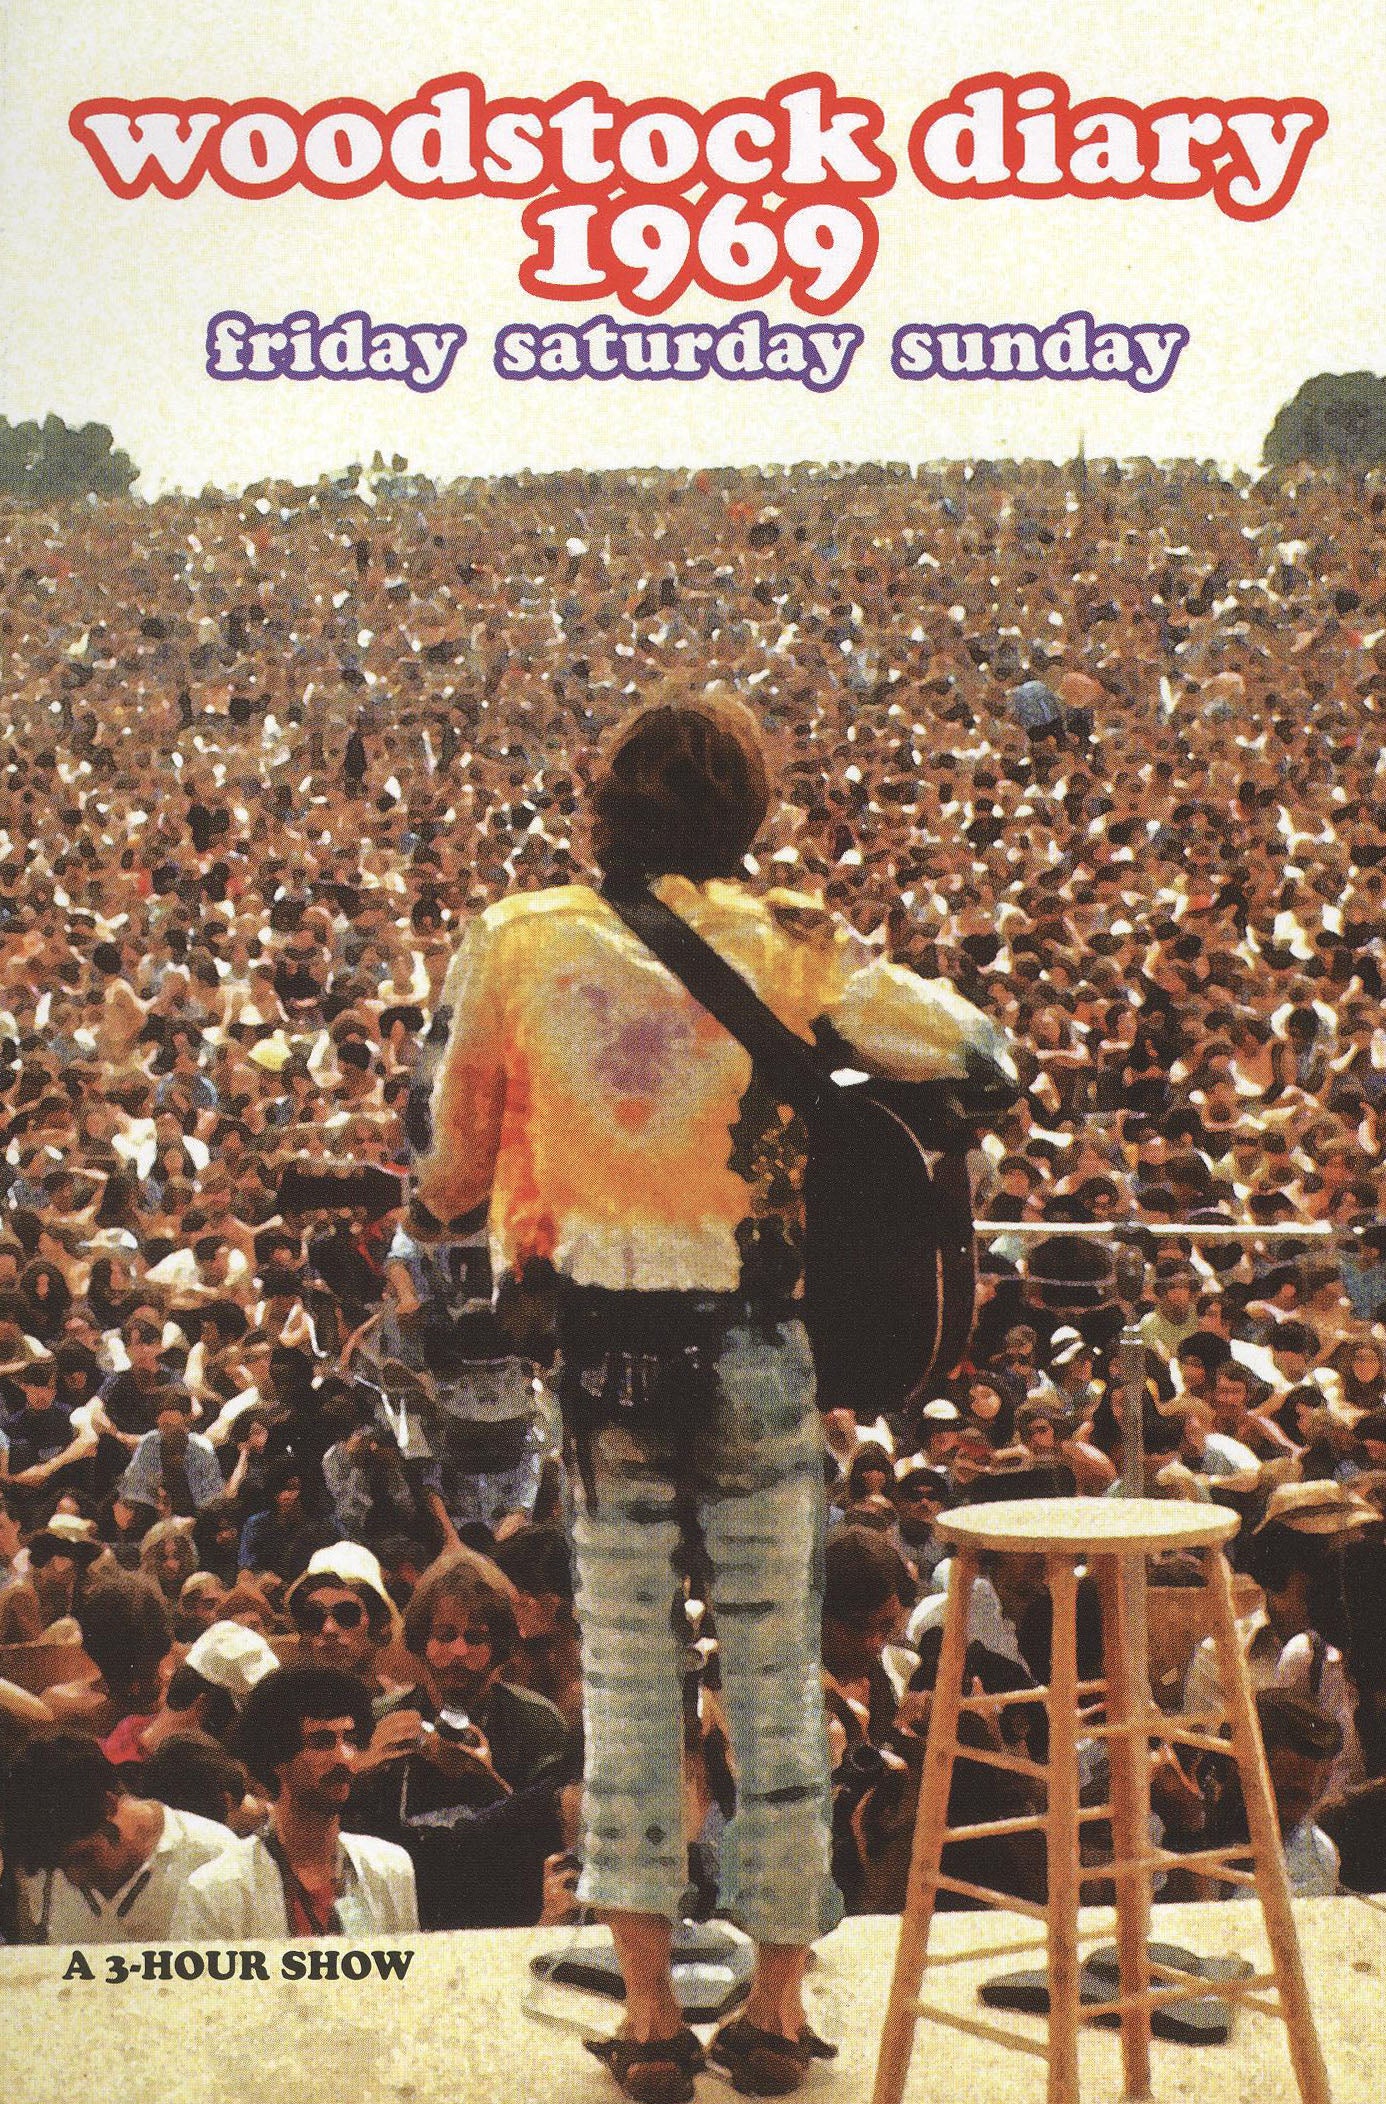 Woodstock Diary 1969: Friday Saturday Sunday cover art